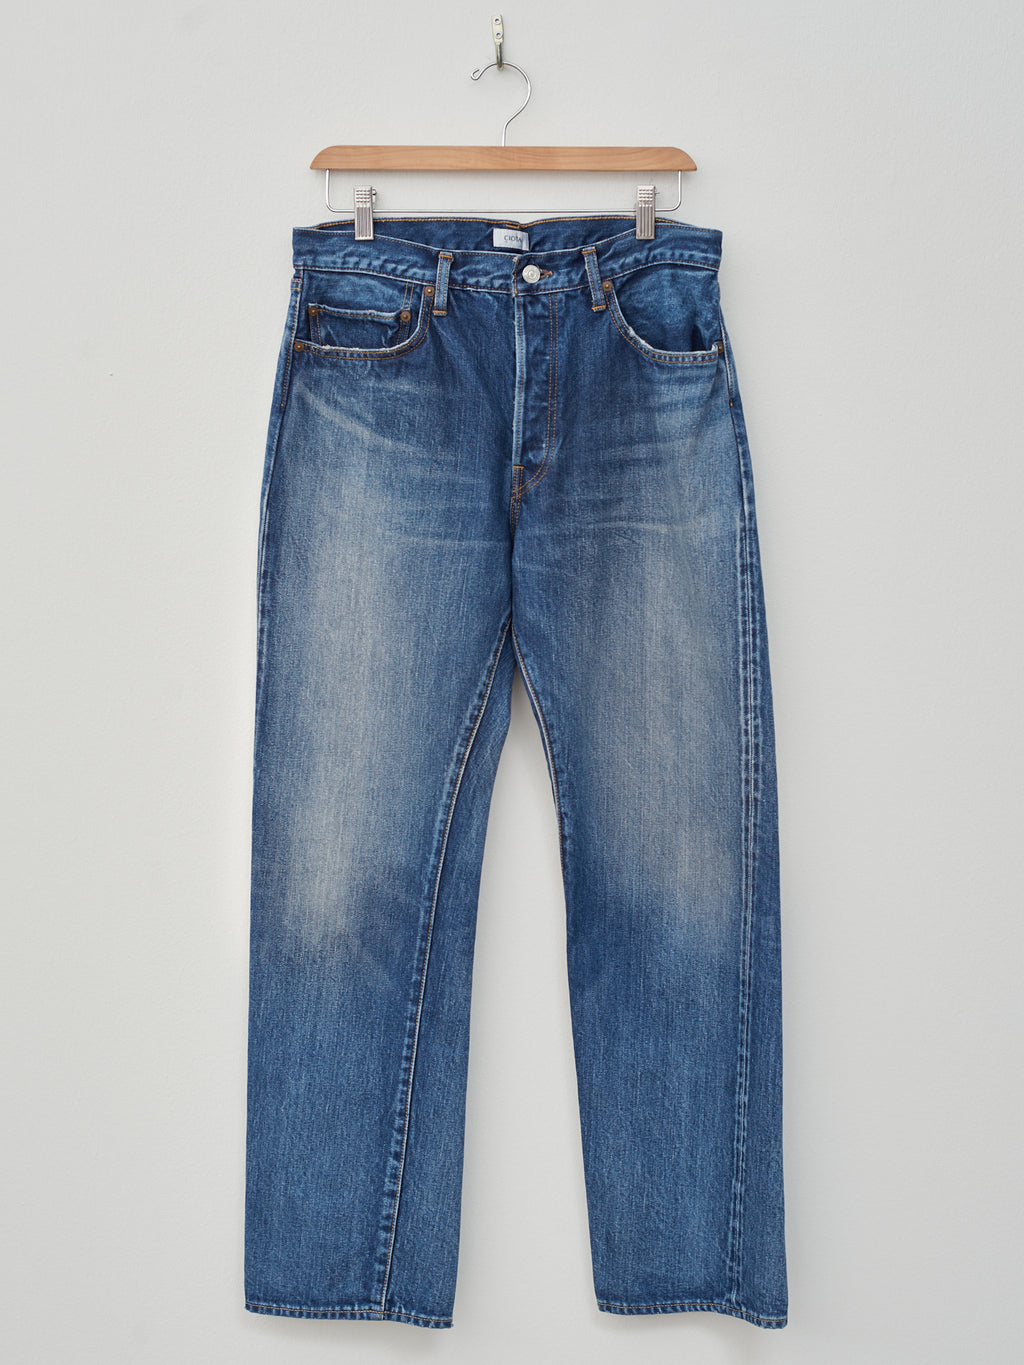 Namu Shop - Ciota Straight 5 Pocket Pants - Medium Dark Blue Damage